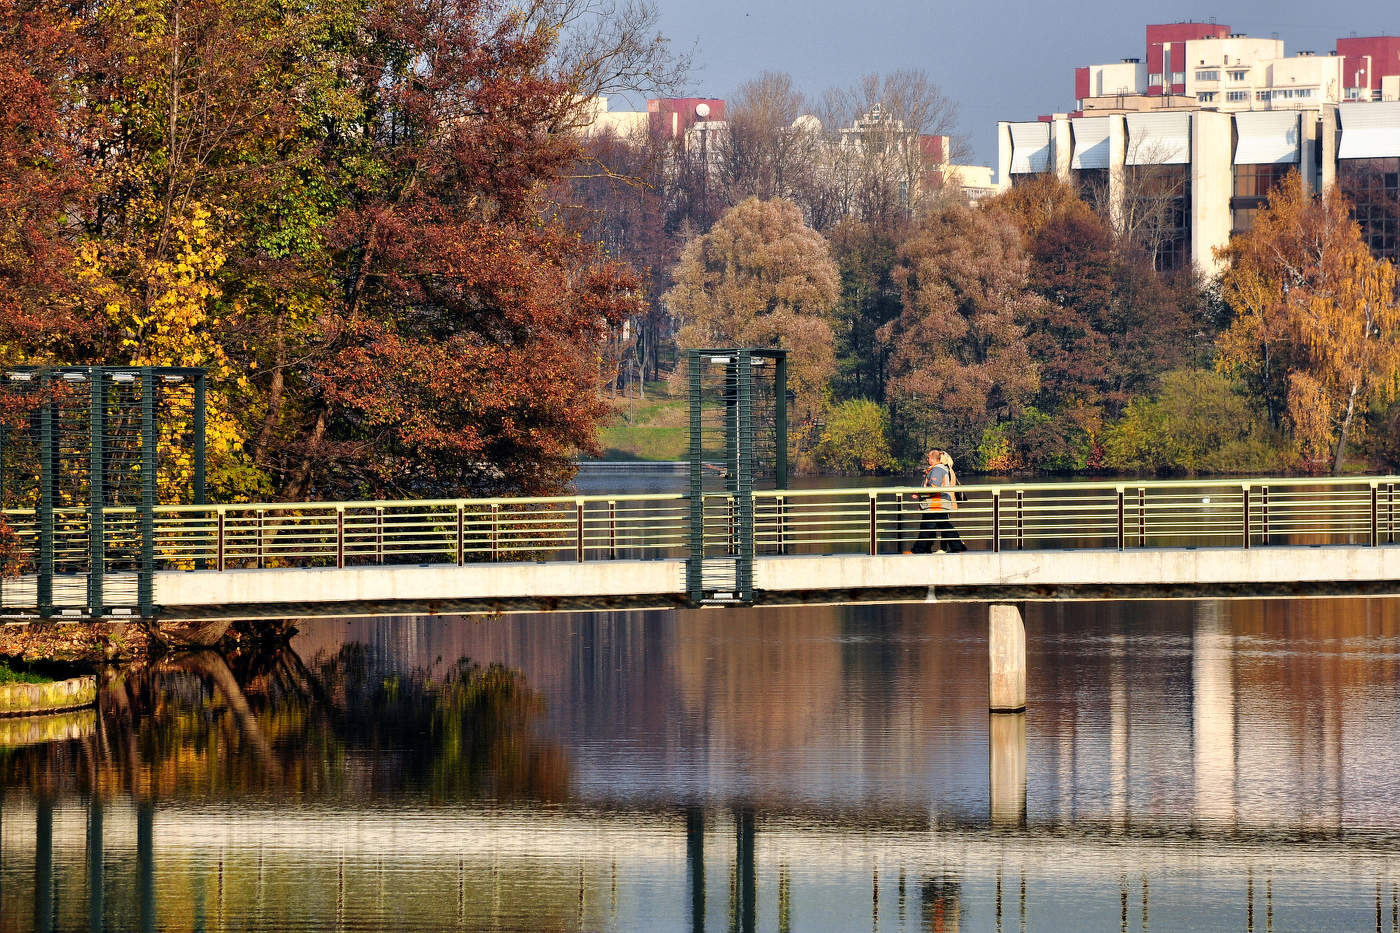 Мост через реку